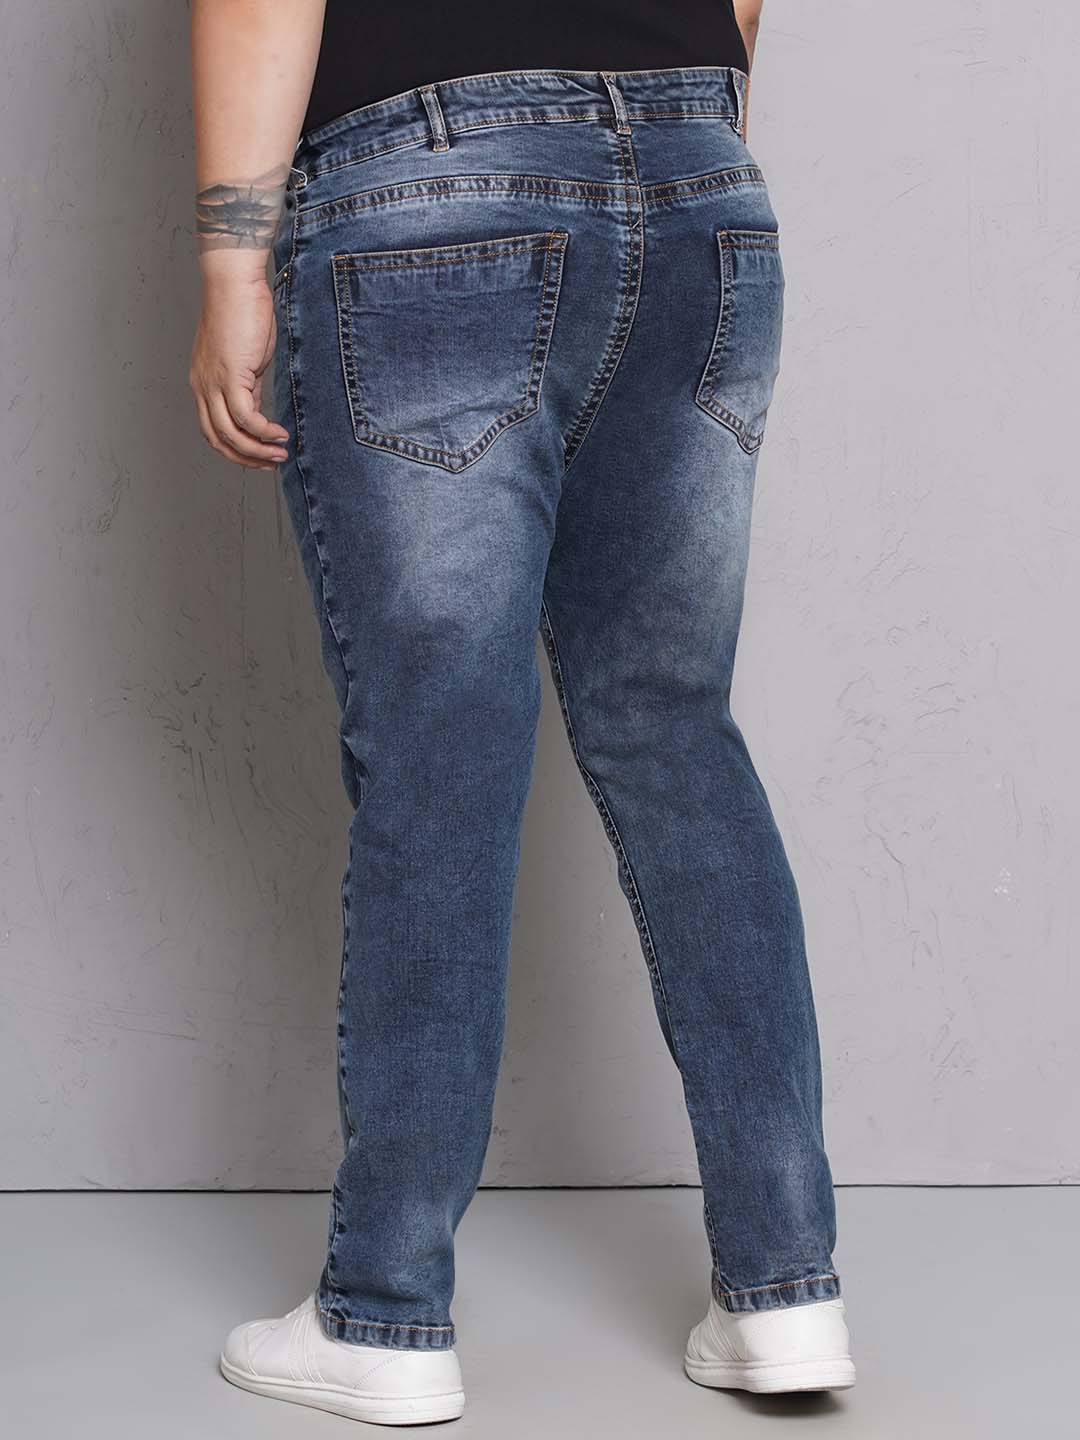 bottomwear/jeans/JPJ27116/jpj27116-5.jpg